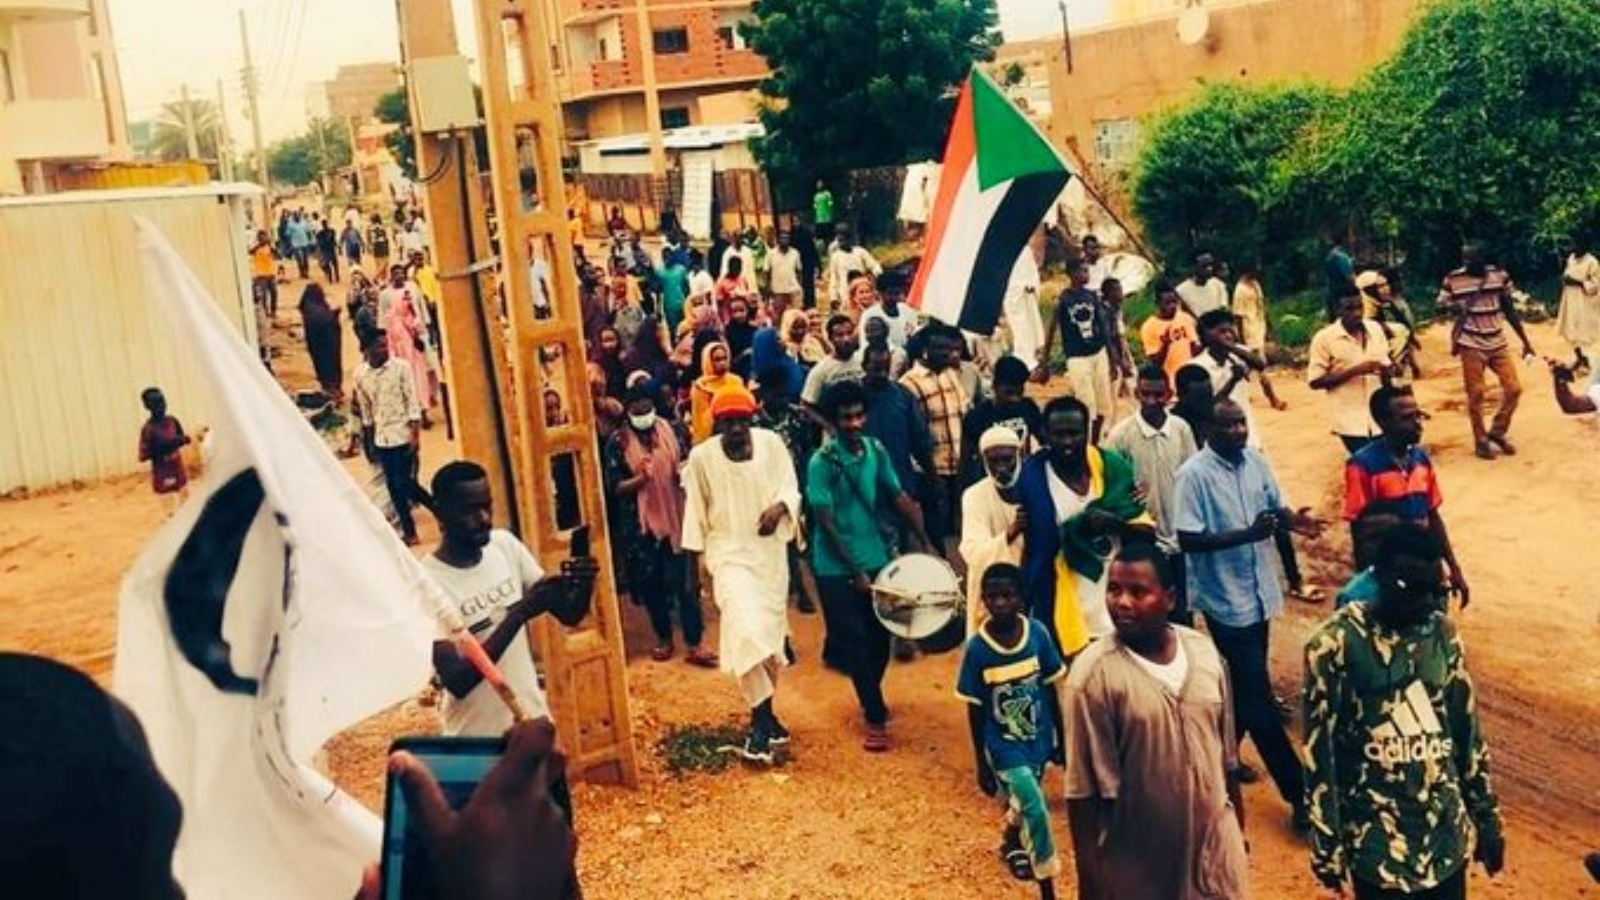 سودانيون يحتجون على انقلاب عسكري أطاح بالانتقال إلى الحكم المدني، في مديرية الشجرة جنوب الخرطوم. في 25 تشرين الأول/أكتوبر 2021.